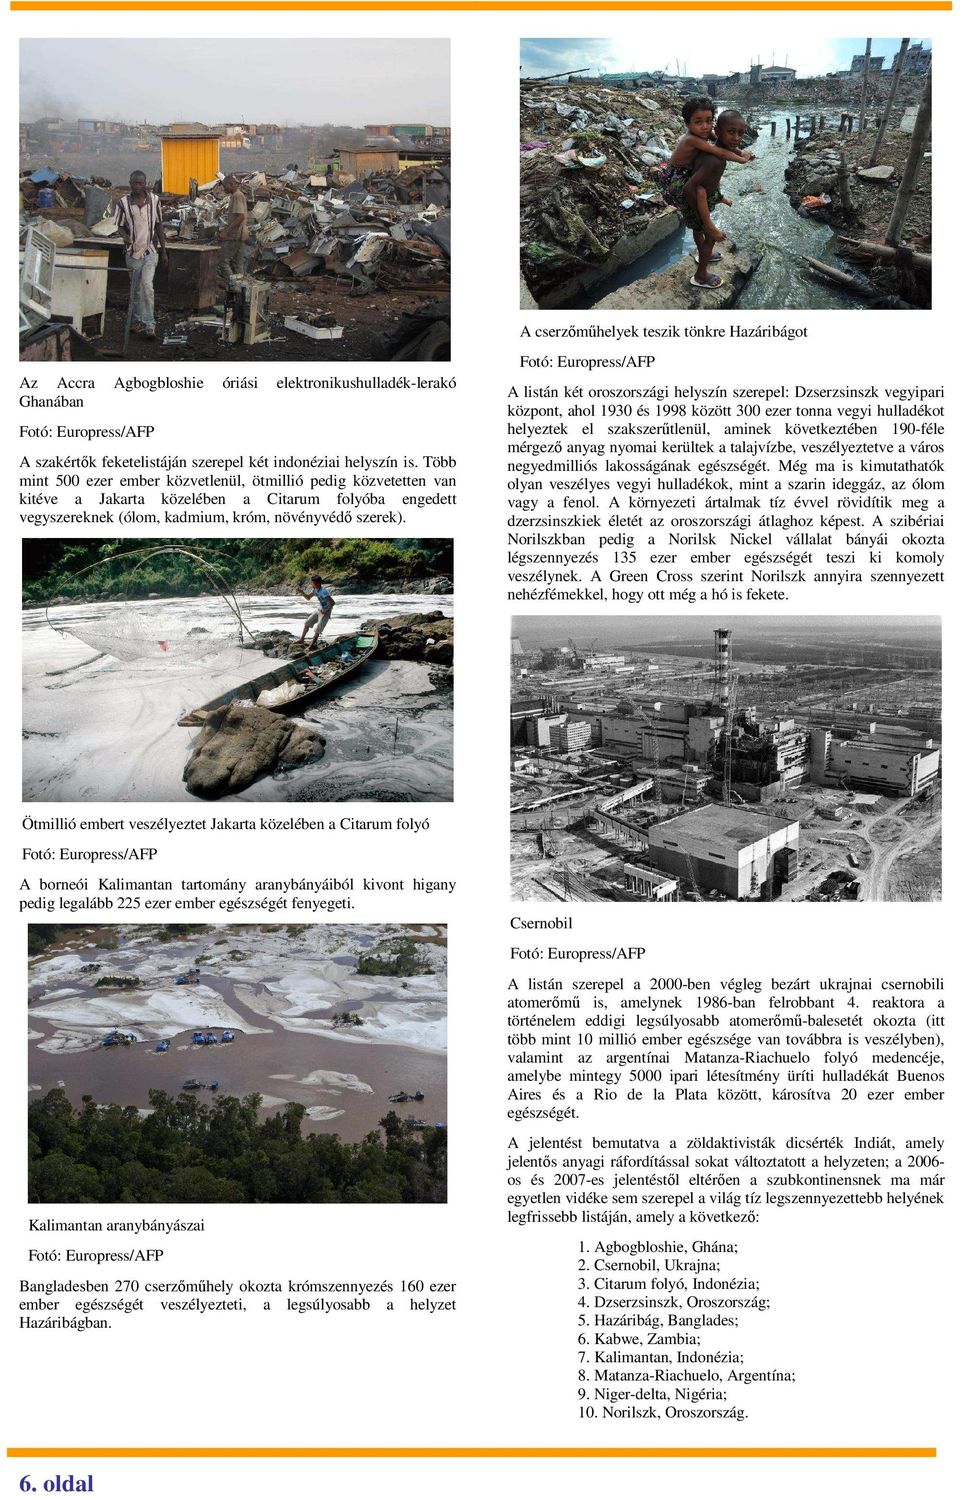 Fotó: Europress/AFP A listán két oroszországi helyszín szerepel: Dzserzsinszk vegyipari központ, ahol 1930 és 1998 között 300 ezer tonna vegyi hulladékot helyeztek el szakszerőtlenül, aminek